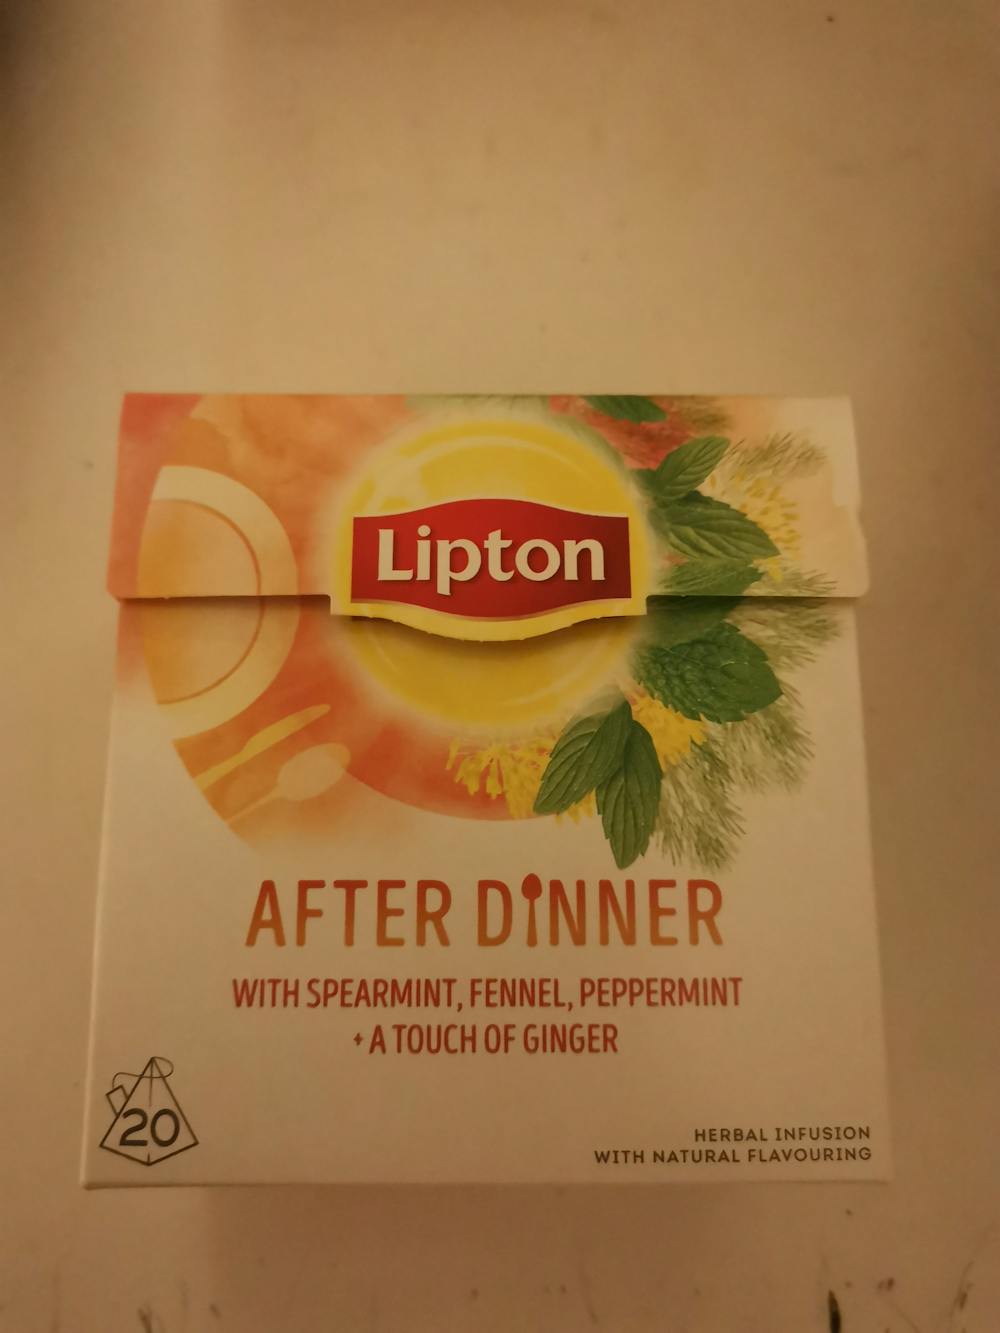 After dinner, Lipton